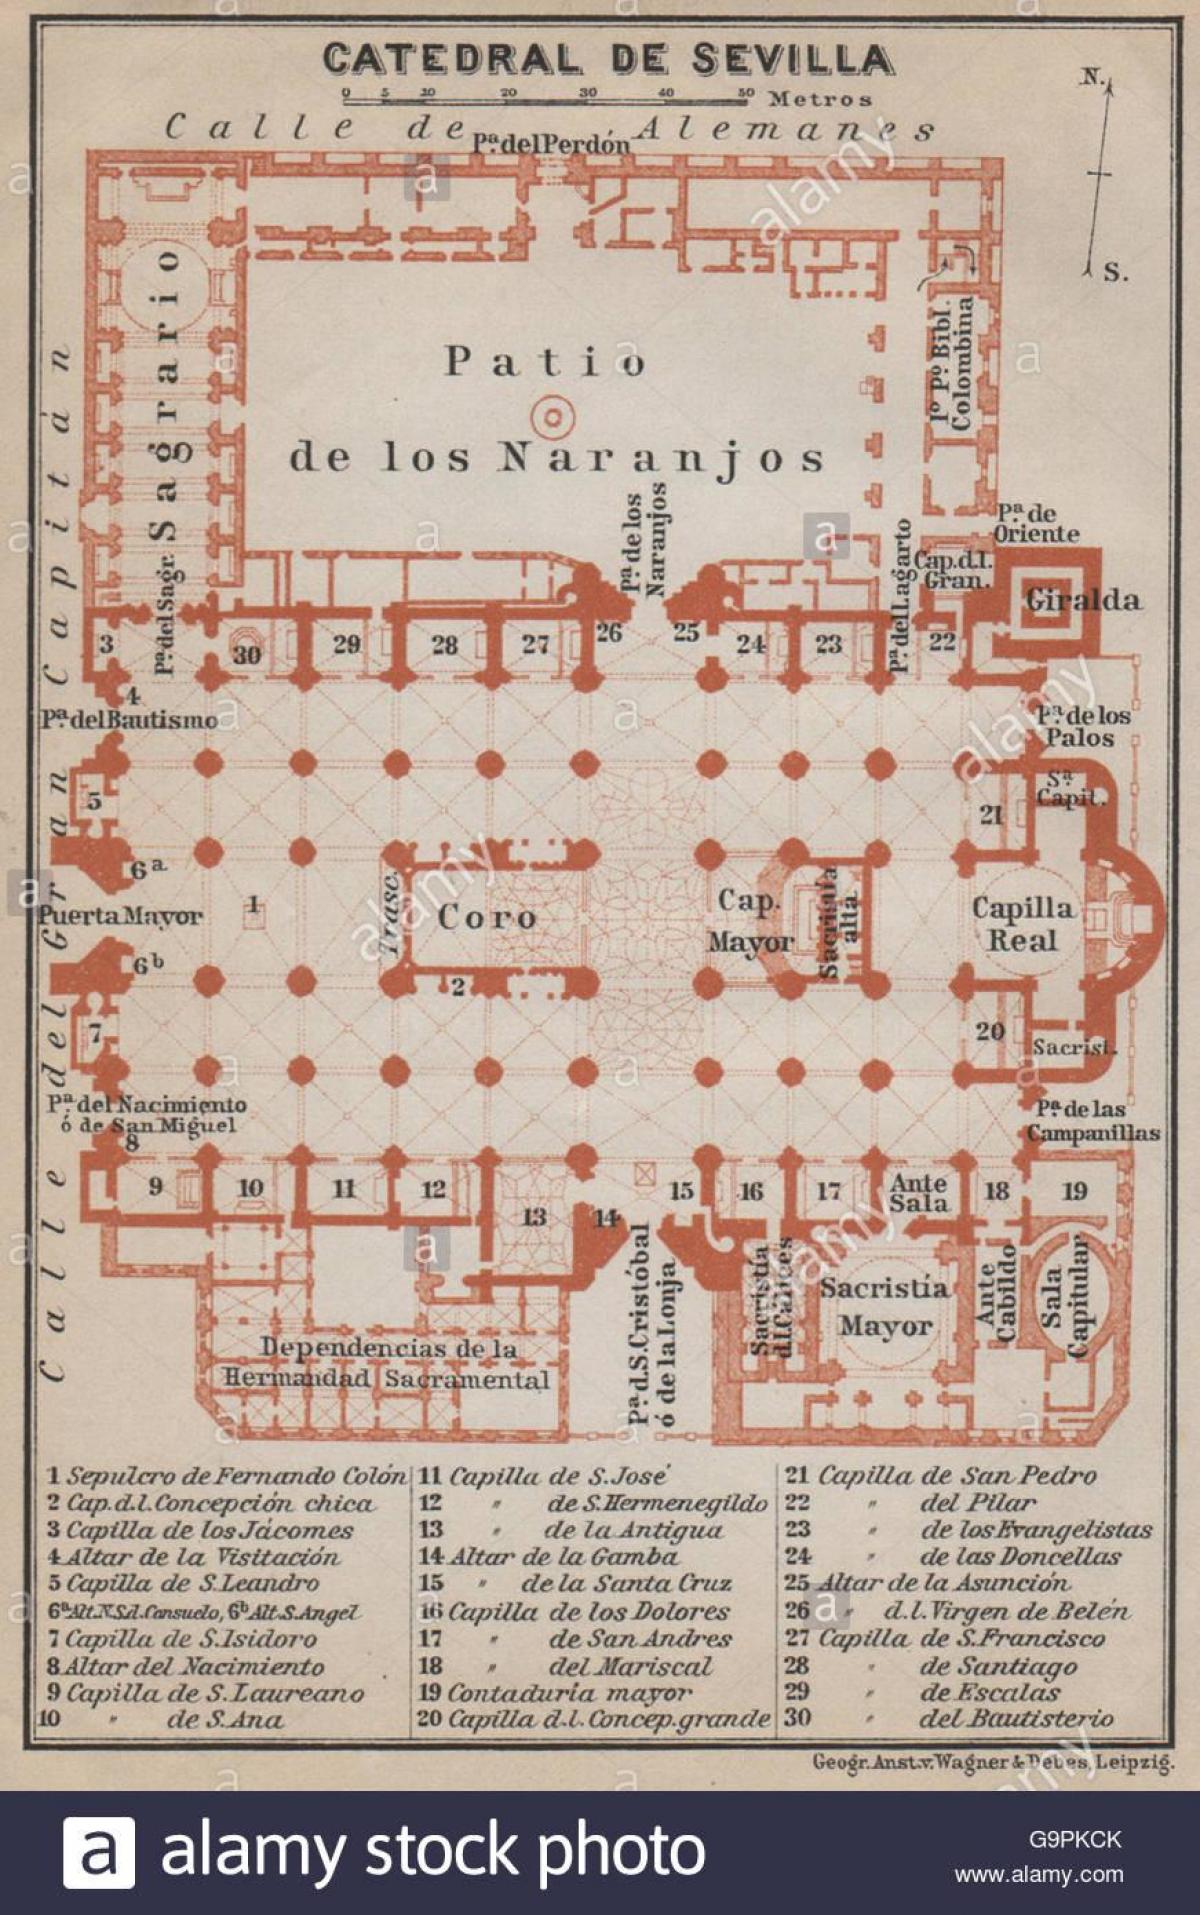 kort af Seville cathedral